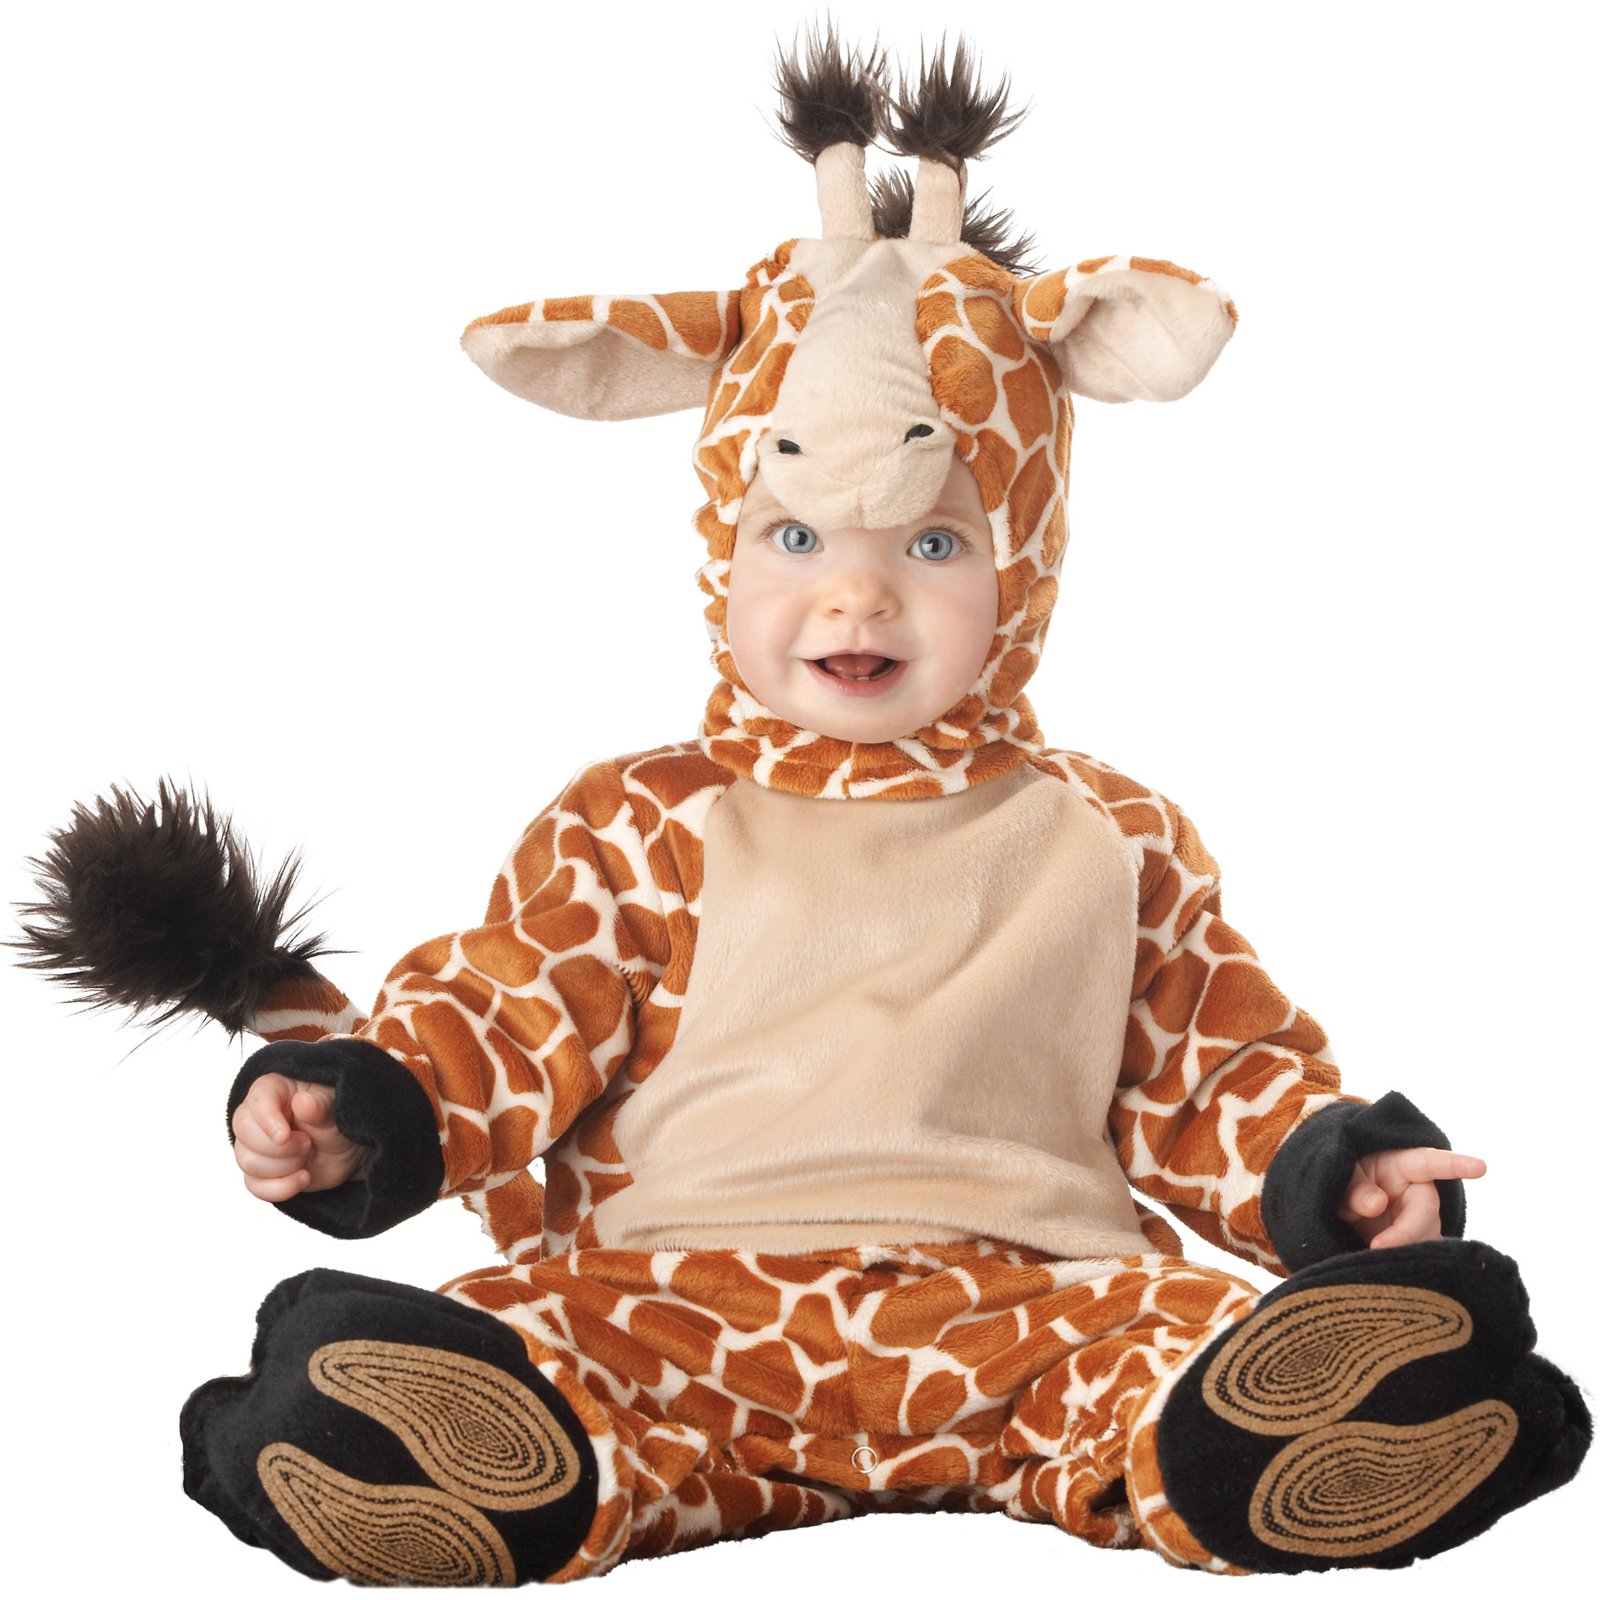 Giraffe Costume | Costumes FC